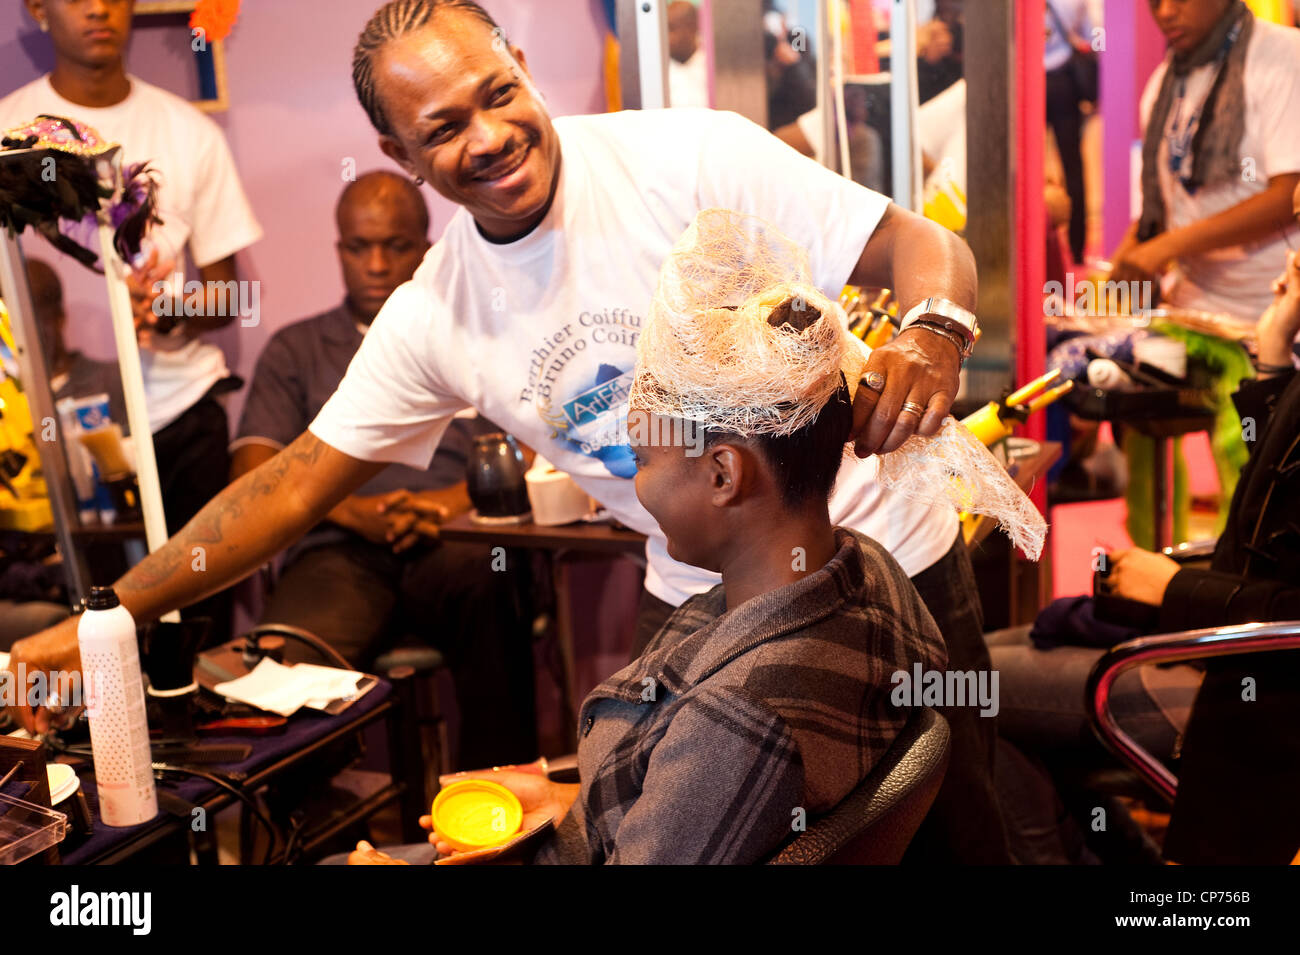 París, Francia - Caribe mujer en la peluquería. Foto de stock